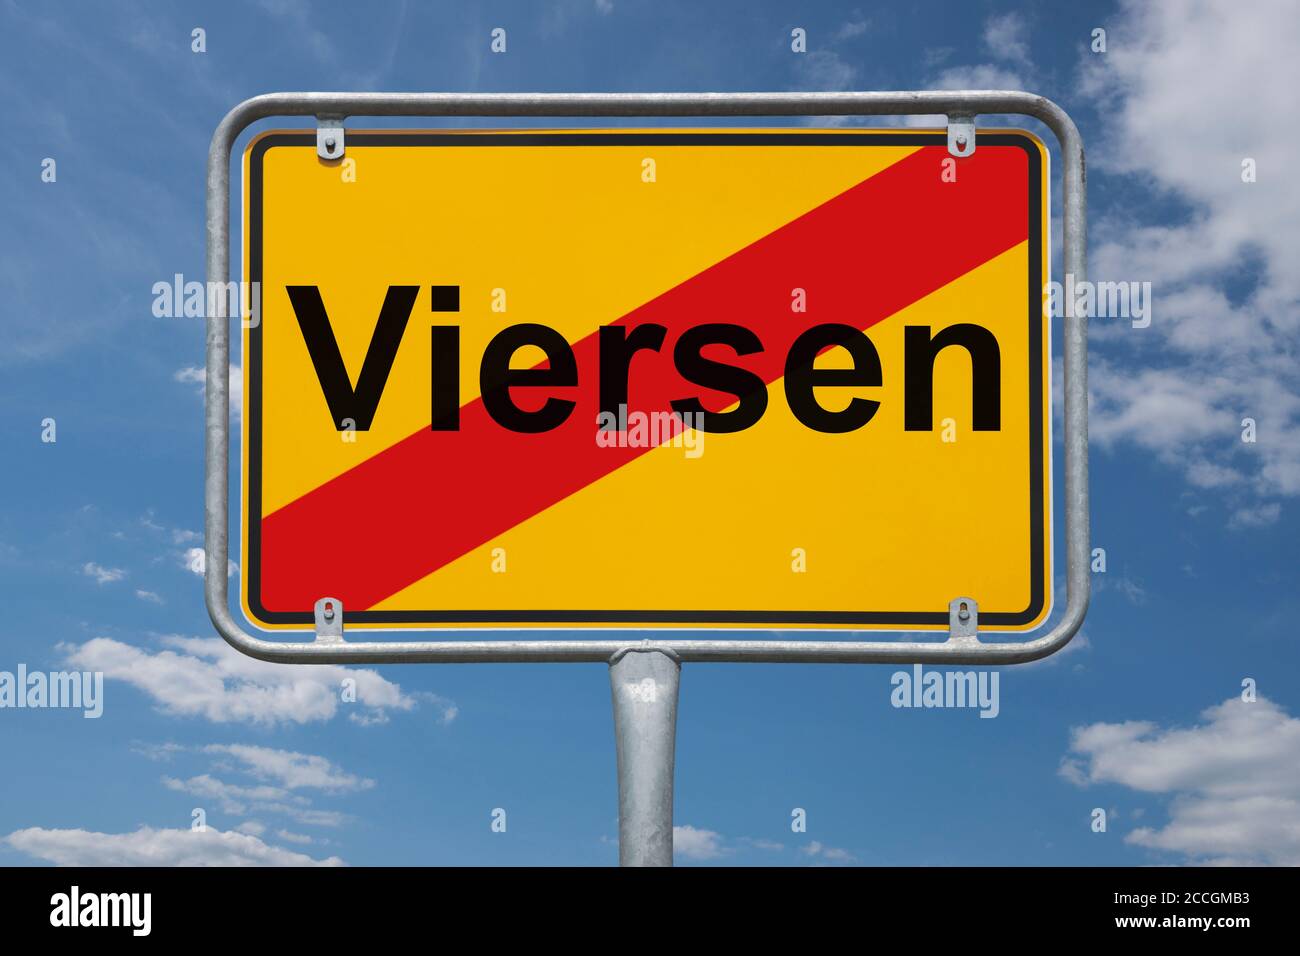 Ortstafel Viersen, Nordrhein-Westfalen, Deutschland | Place name sign Viersen, North Rhine-Westphalia, Germany, Europe Stock Photo